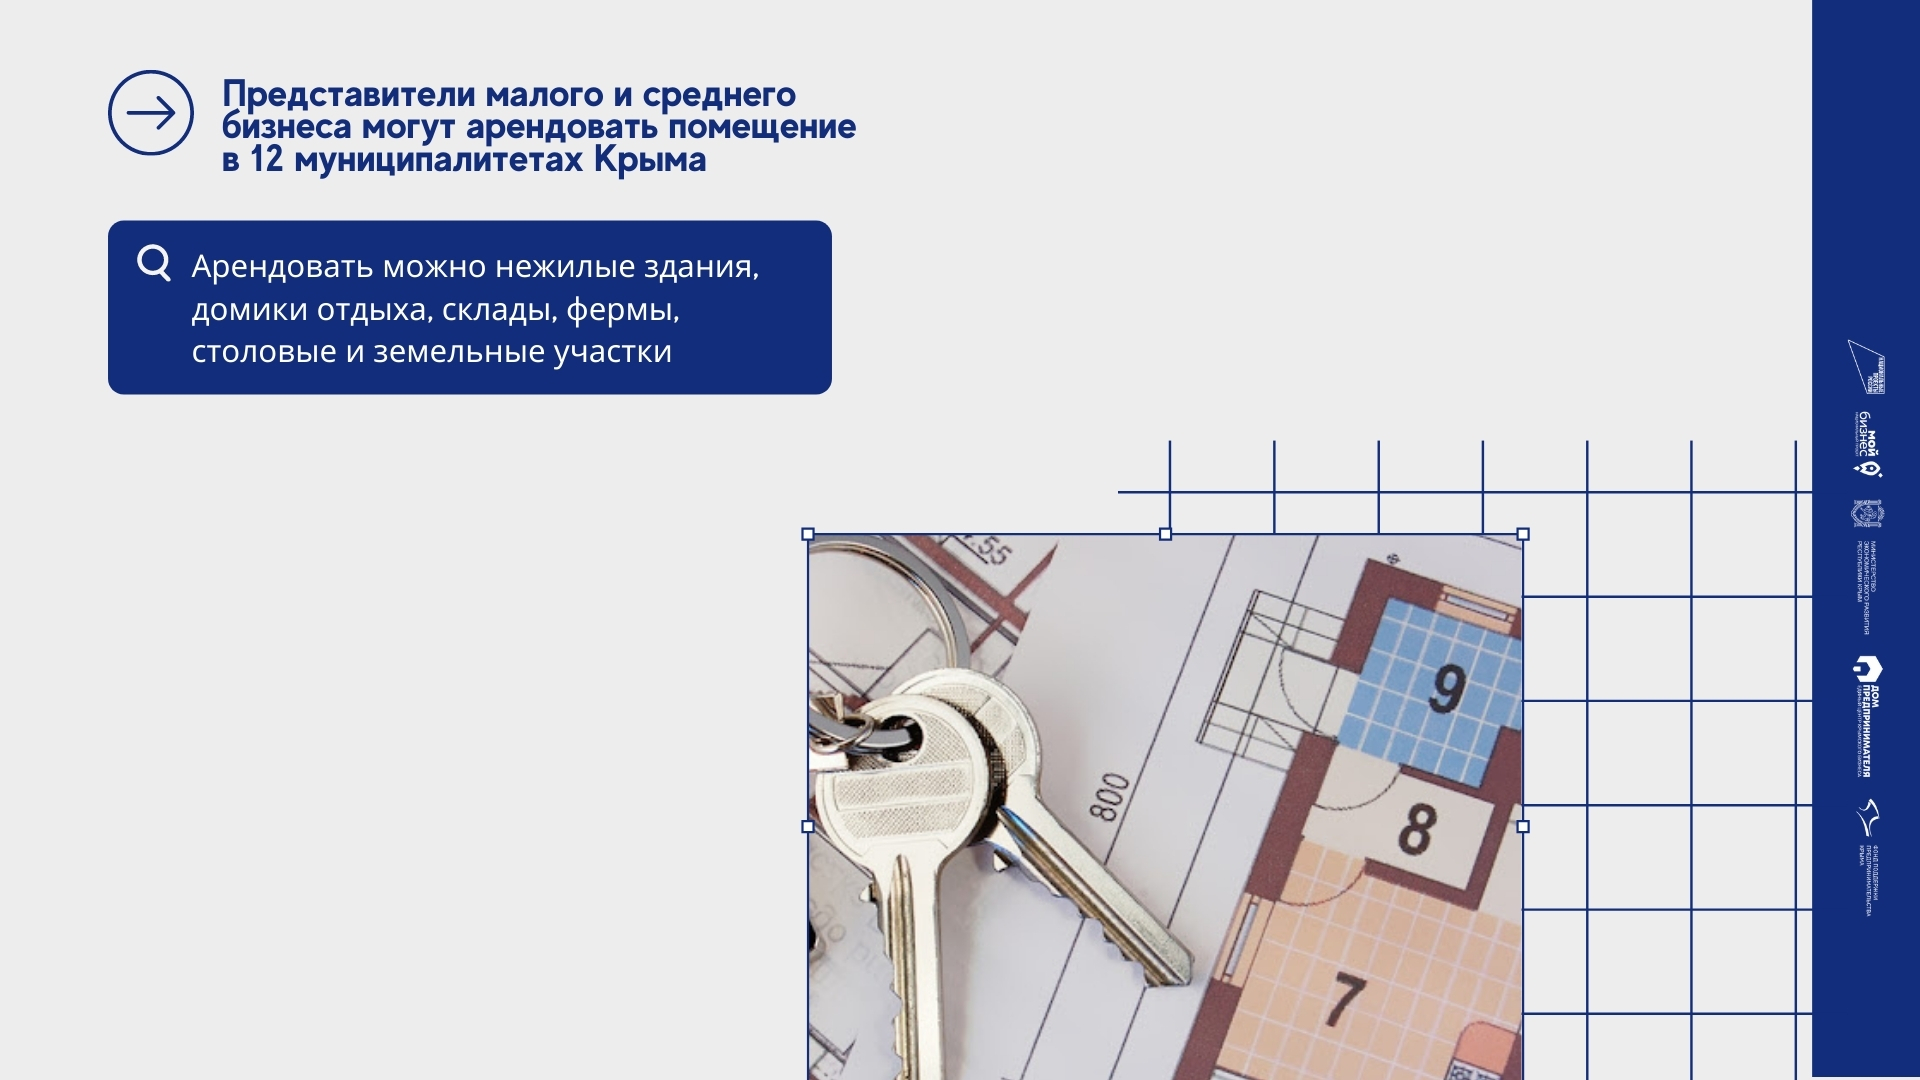 Представители малого и среднего бизнеса могут арендовать помещение в 12 муниципалитетах Крыма